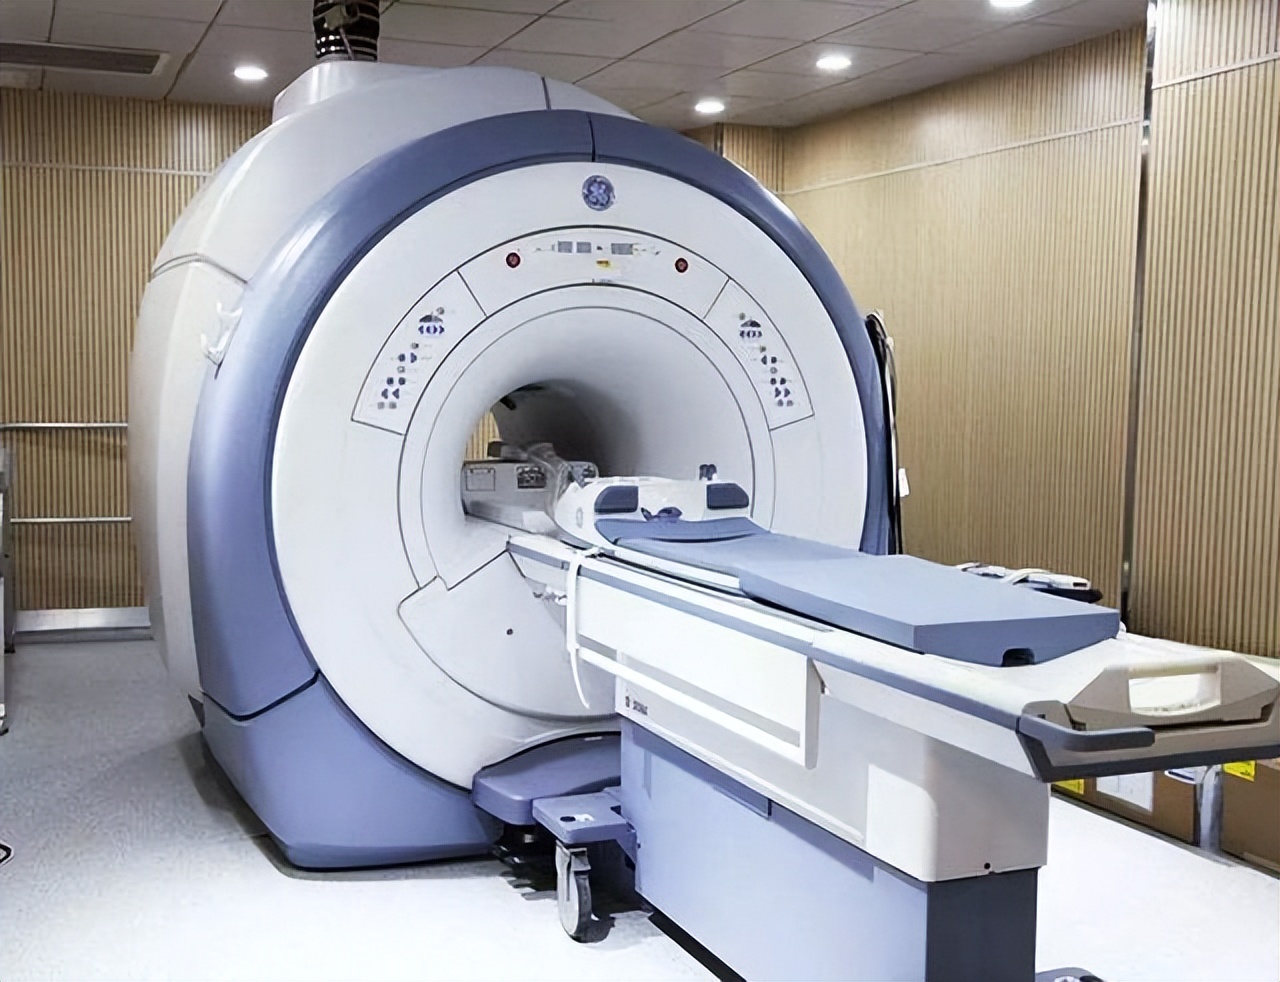 潍坊高新区人民医院高端1.5T MRI(磁共振)正式投入启用， 最新一代1.5T磁共振是何方“神器”？_检查